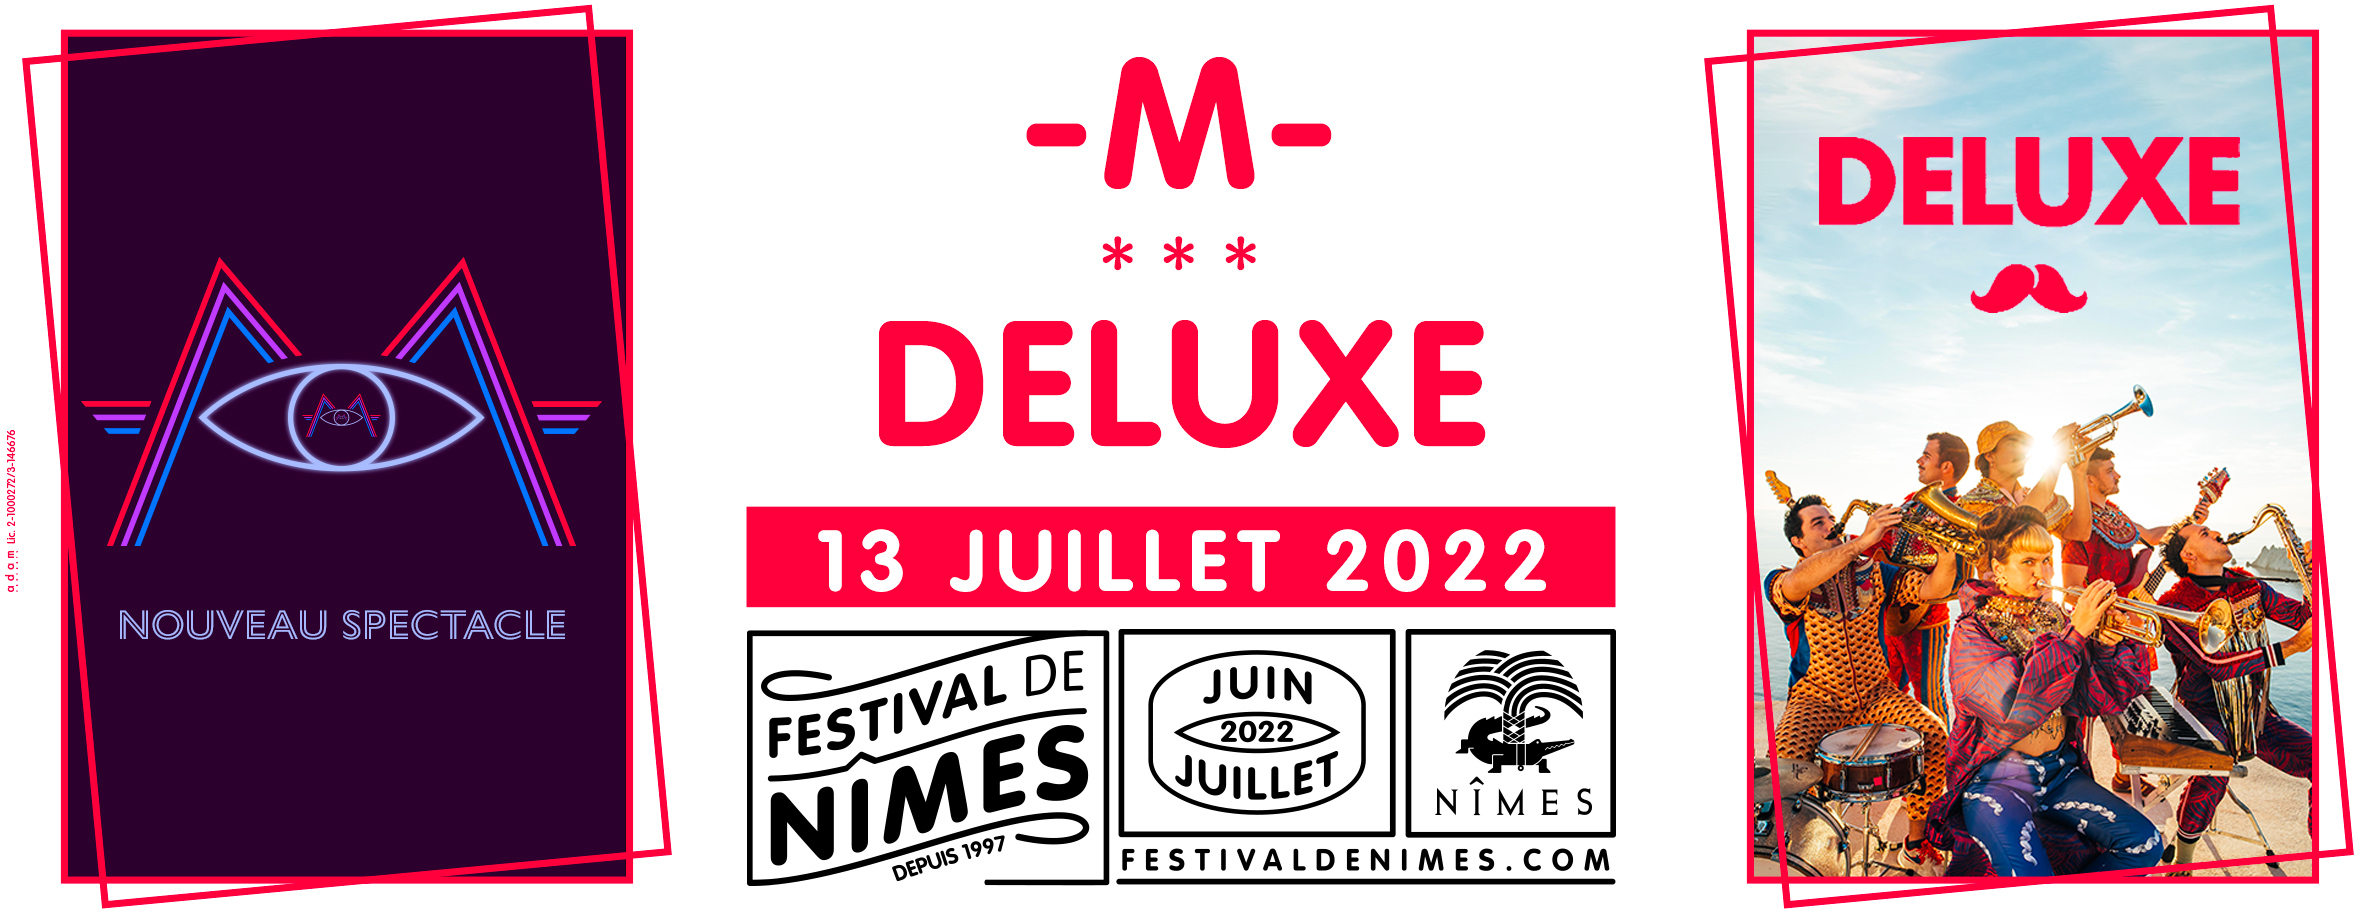 Festival de nimes 2022